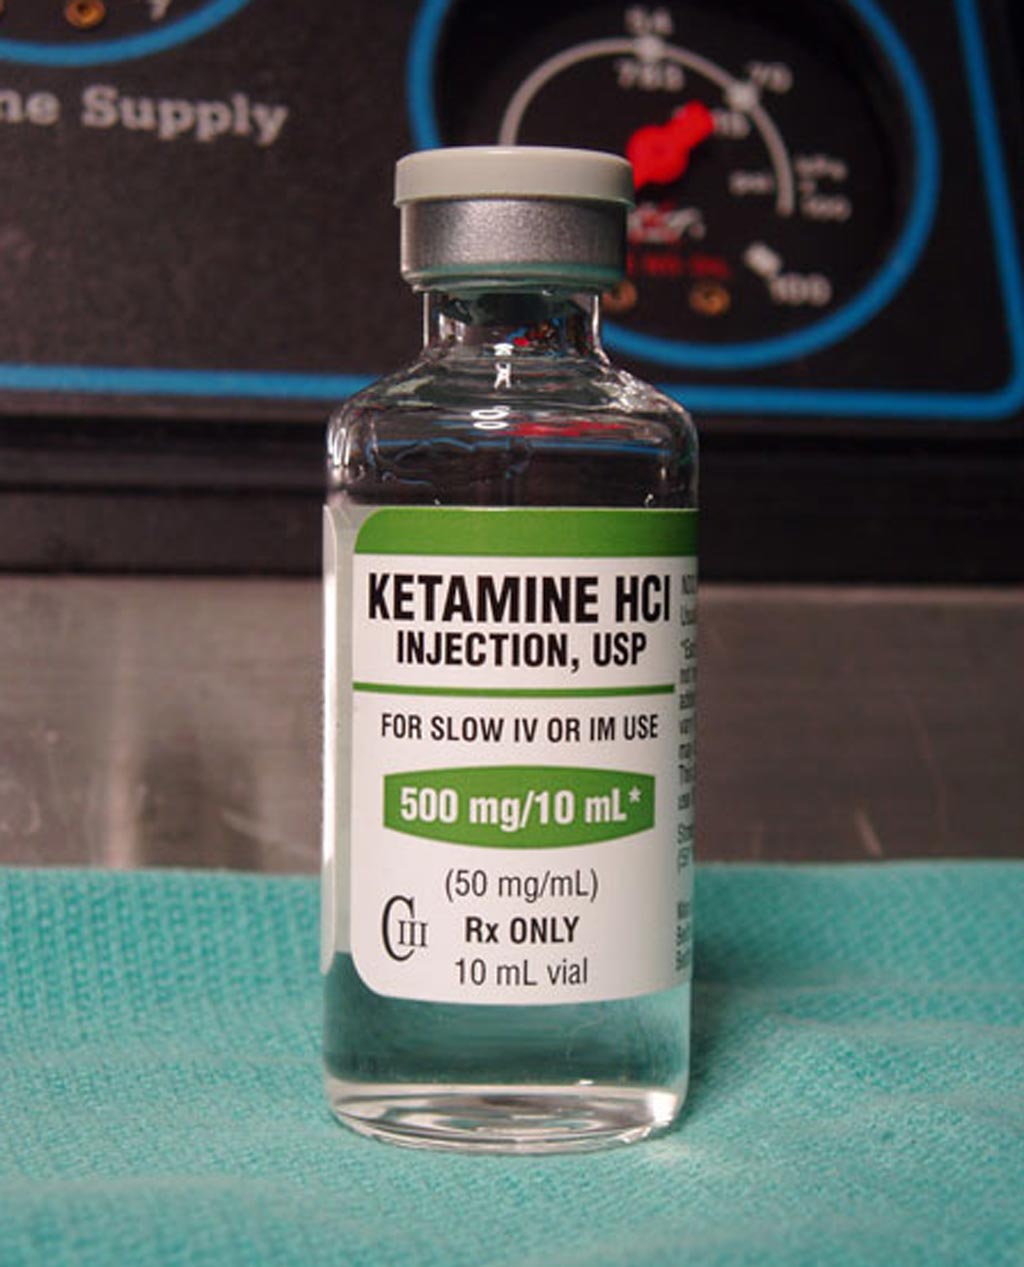 Imagen: Una nueva investigación sugiere que la ketamina puede reducir rápidamente los pensamientos suicidas en los deprimidos (Fotografía cortesía de Erowid).